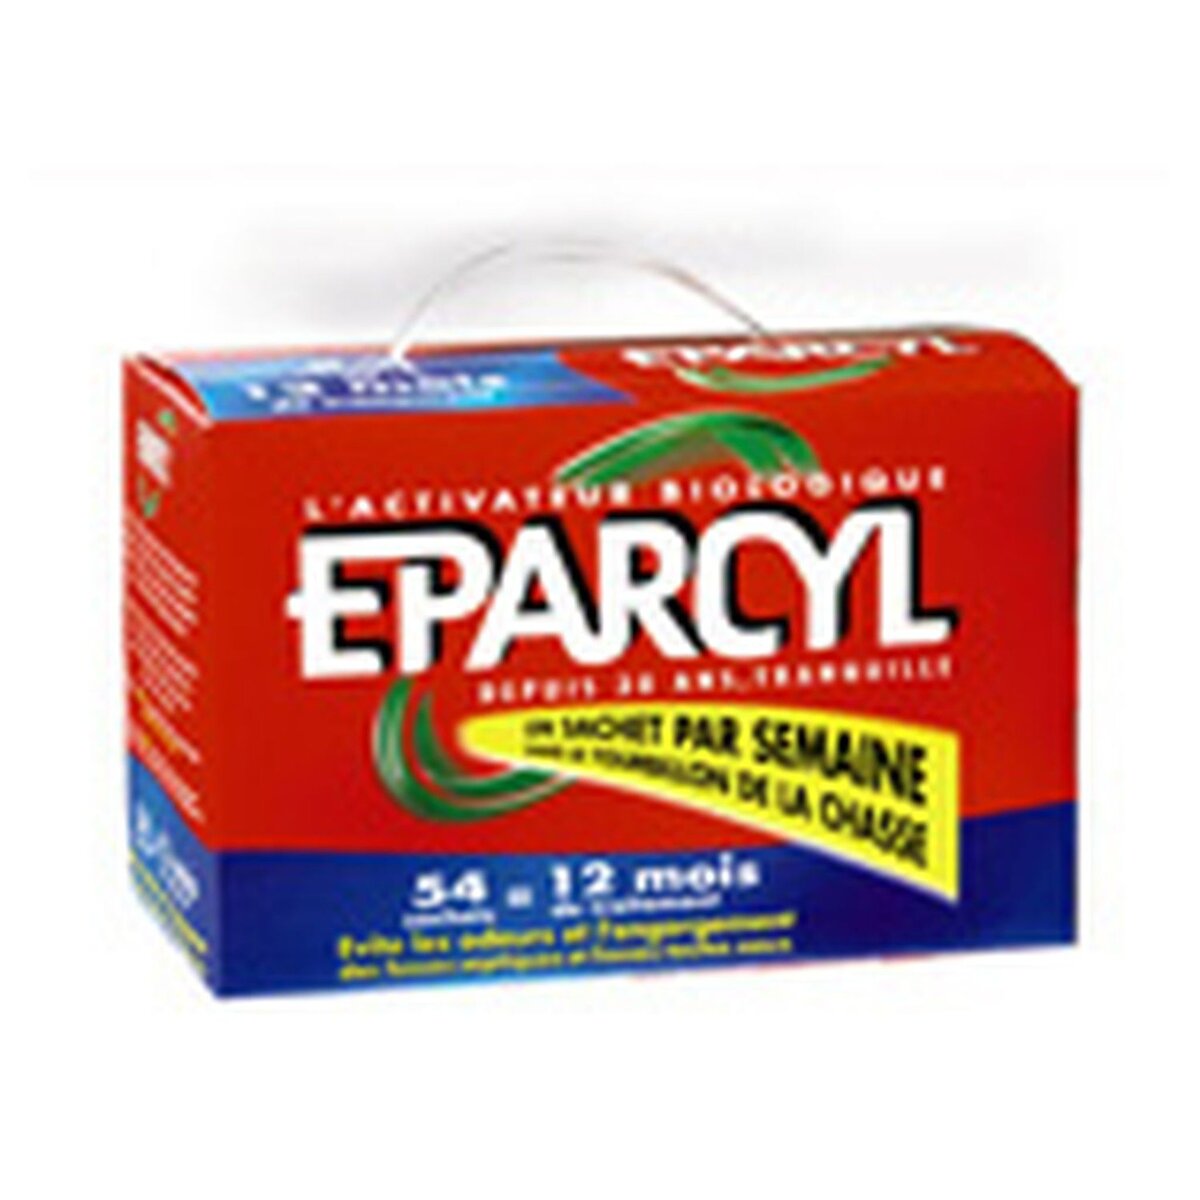 Eparcyl – Granules 200g (6 mois de traitement) Activateur